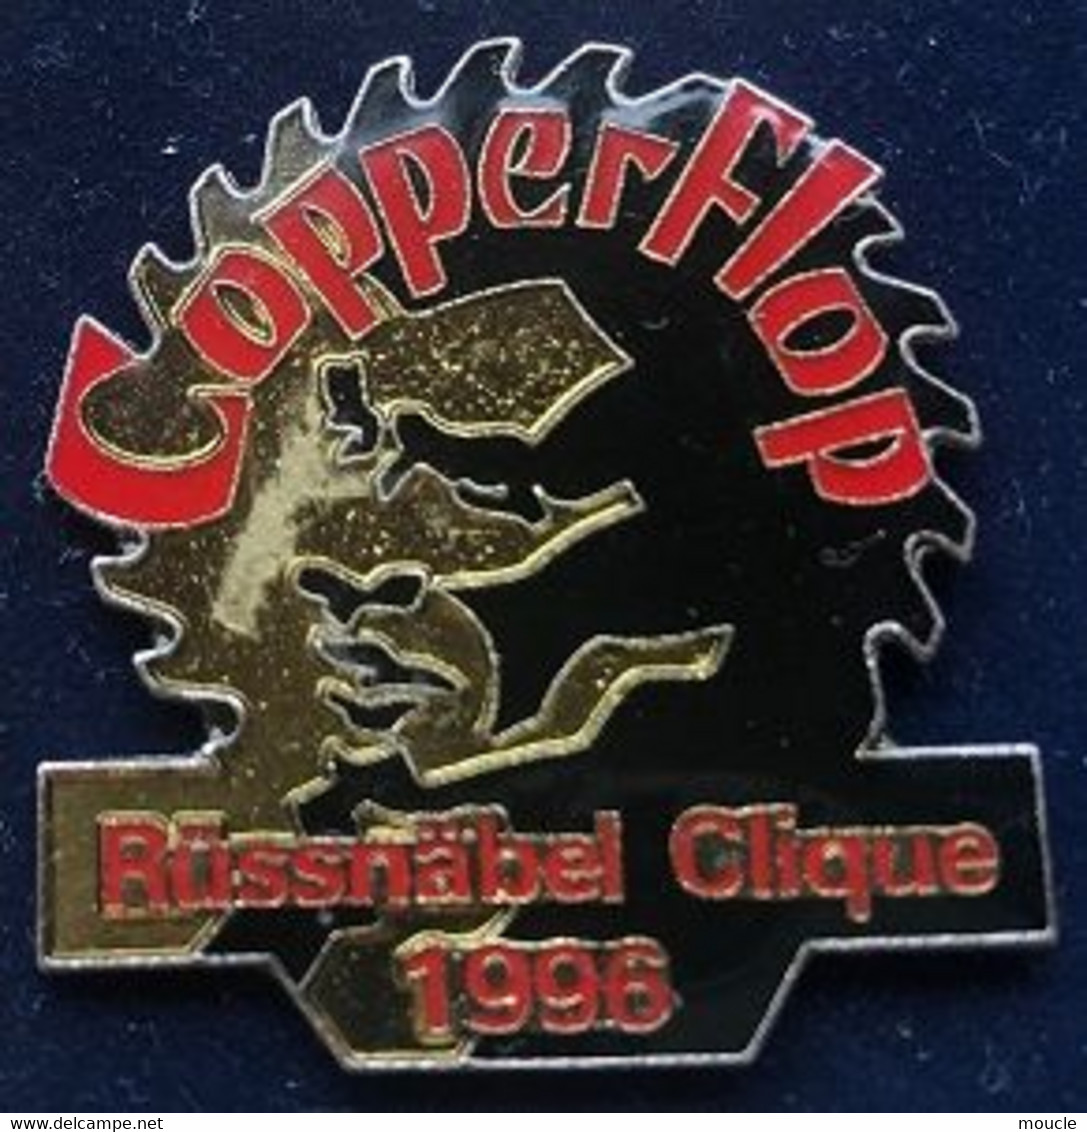 COPPERFLOP - RÜSSNÄBEL CLIQUE 1996 - FOND NOIR - ROUGE - DAVID COPPERFIELD - MAGICIEN - MAGIE - (29) - Personajes Célebres